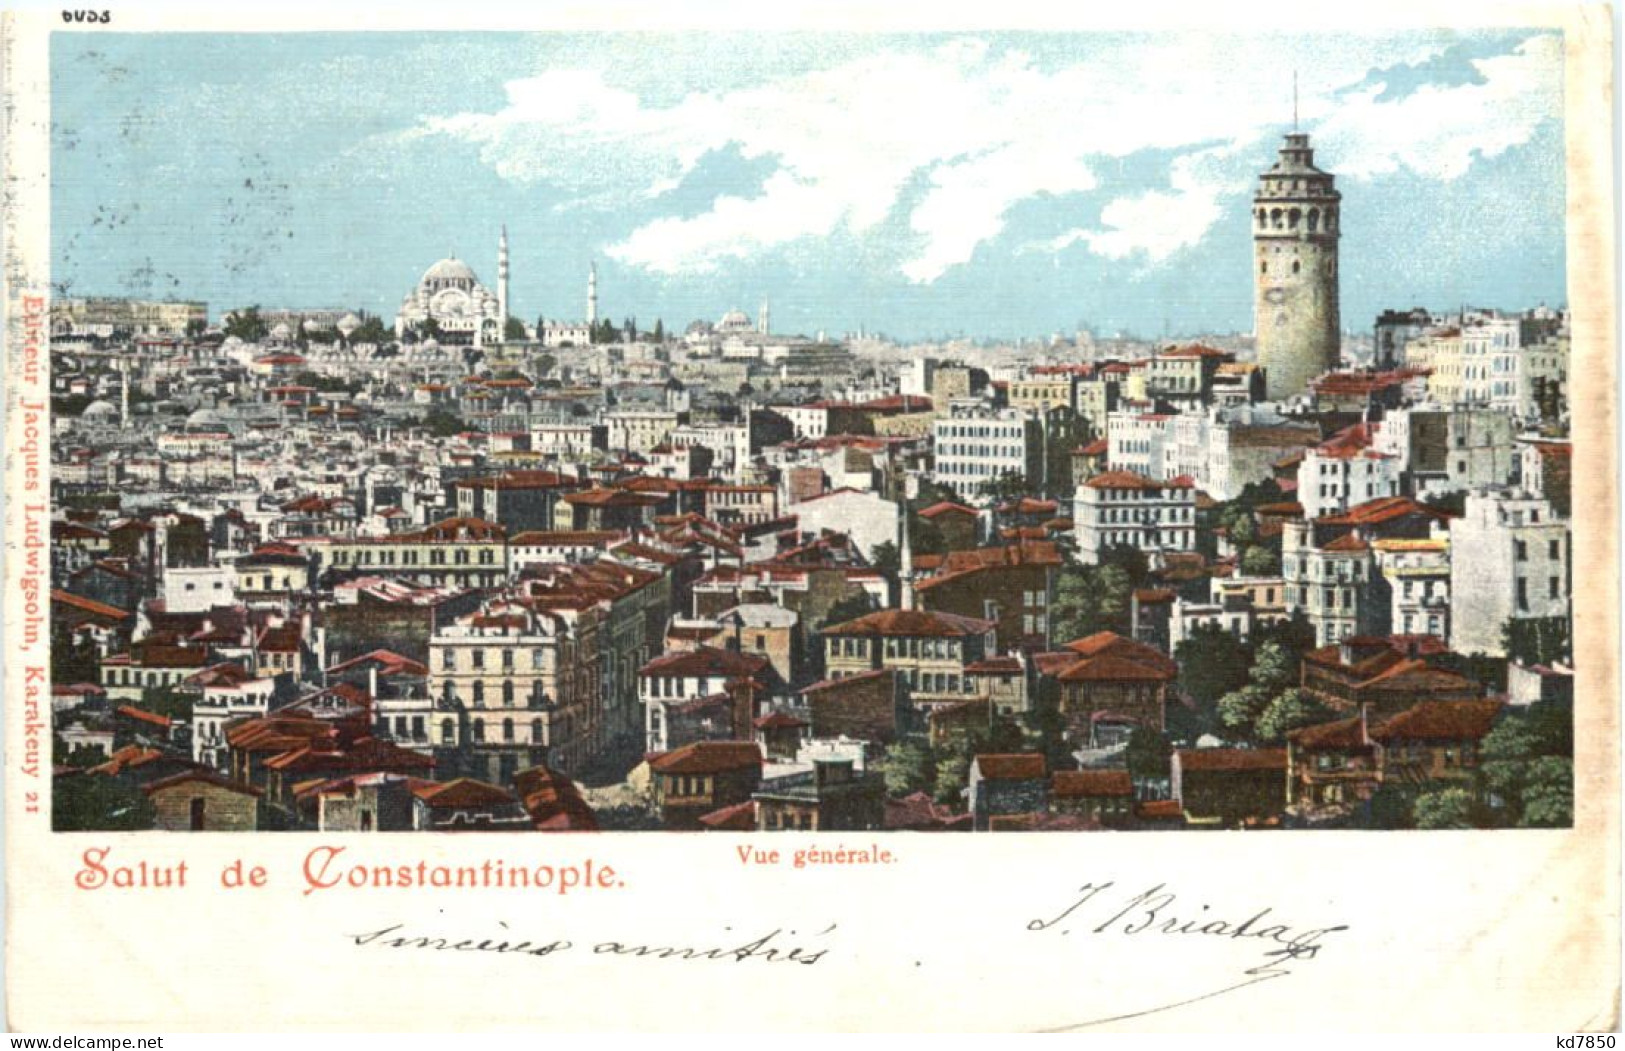 Salut De Constantinople - Turchia